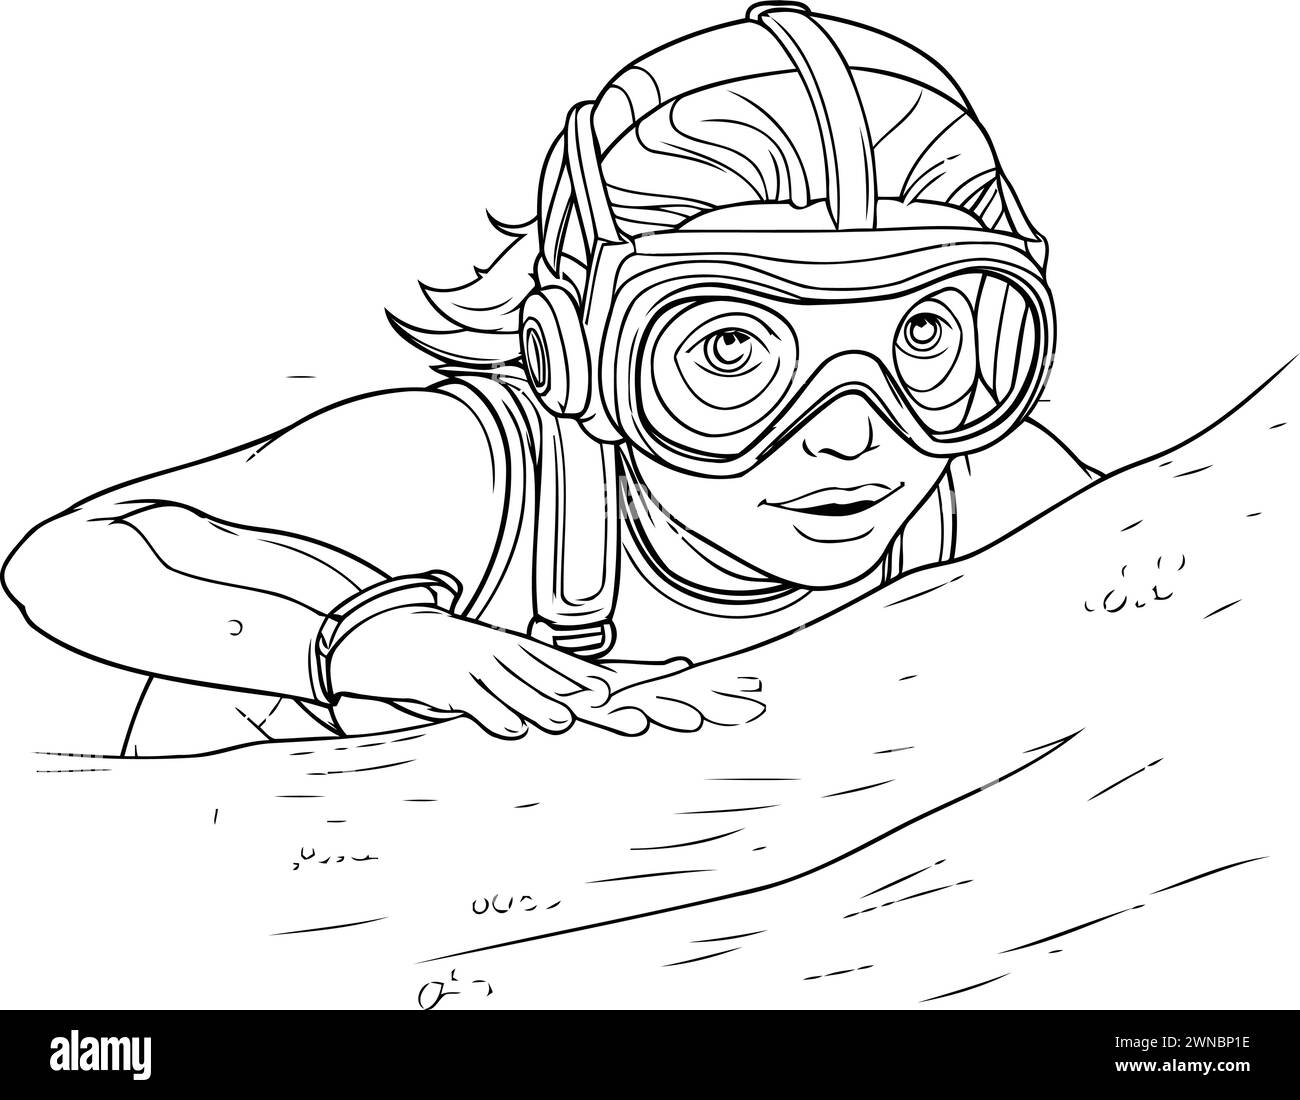 Schizzo di una ragazza subacquea. Illustrazione vettoriale. Illustrazione Vettoriale